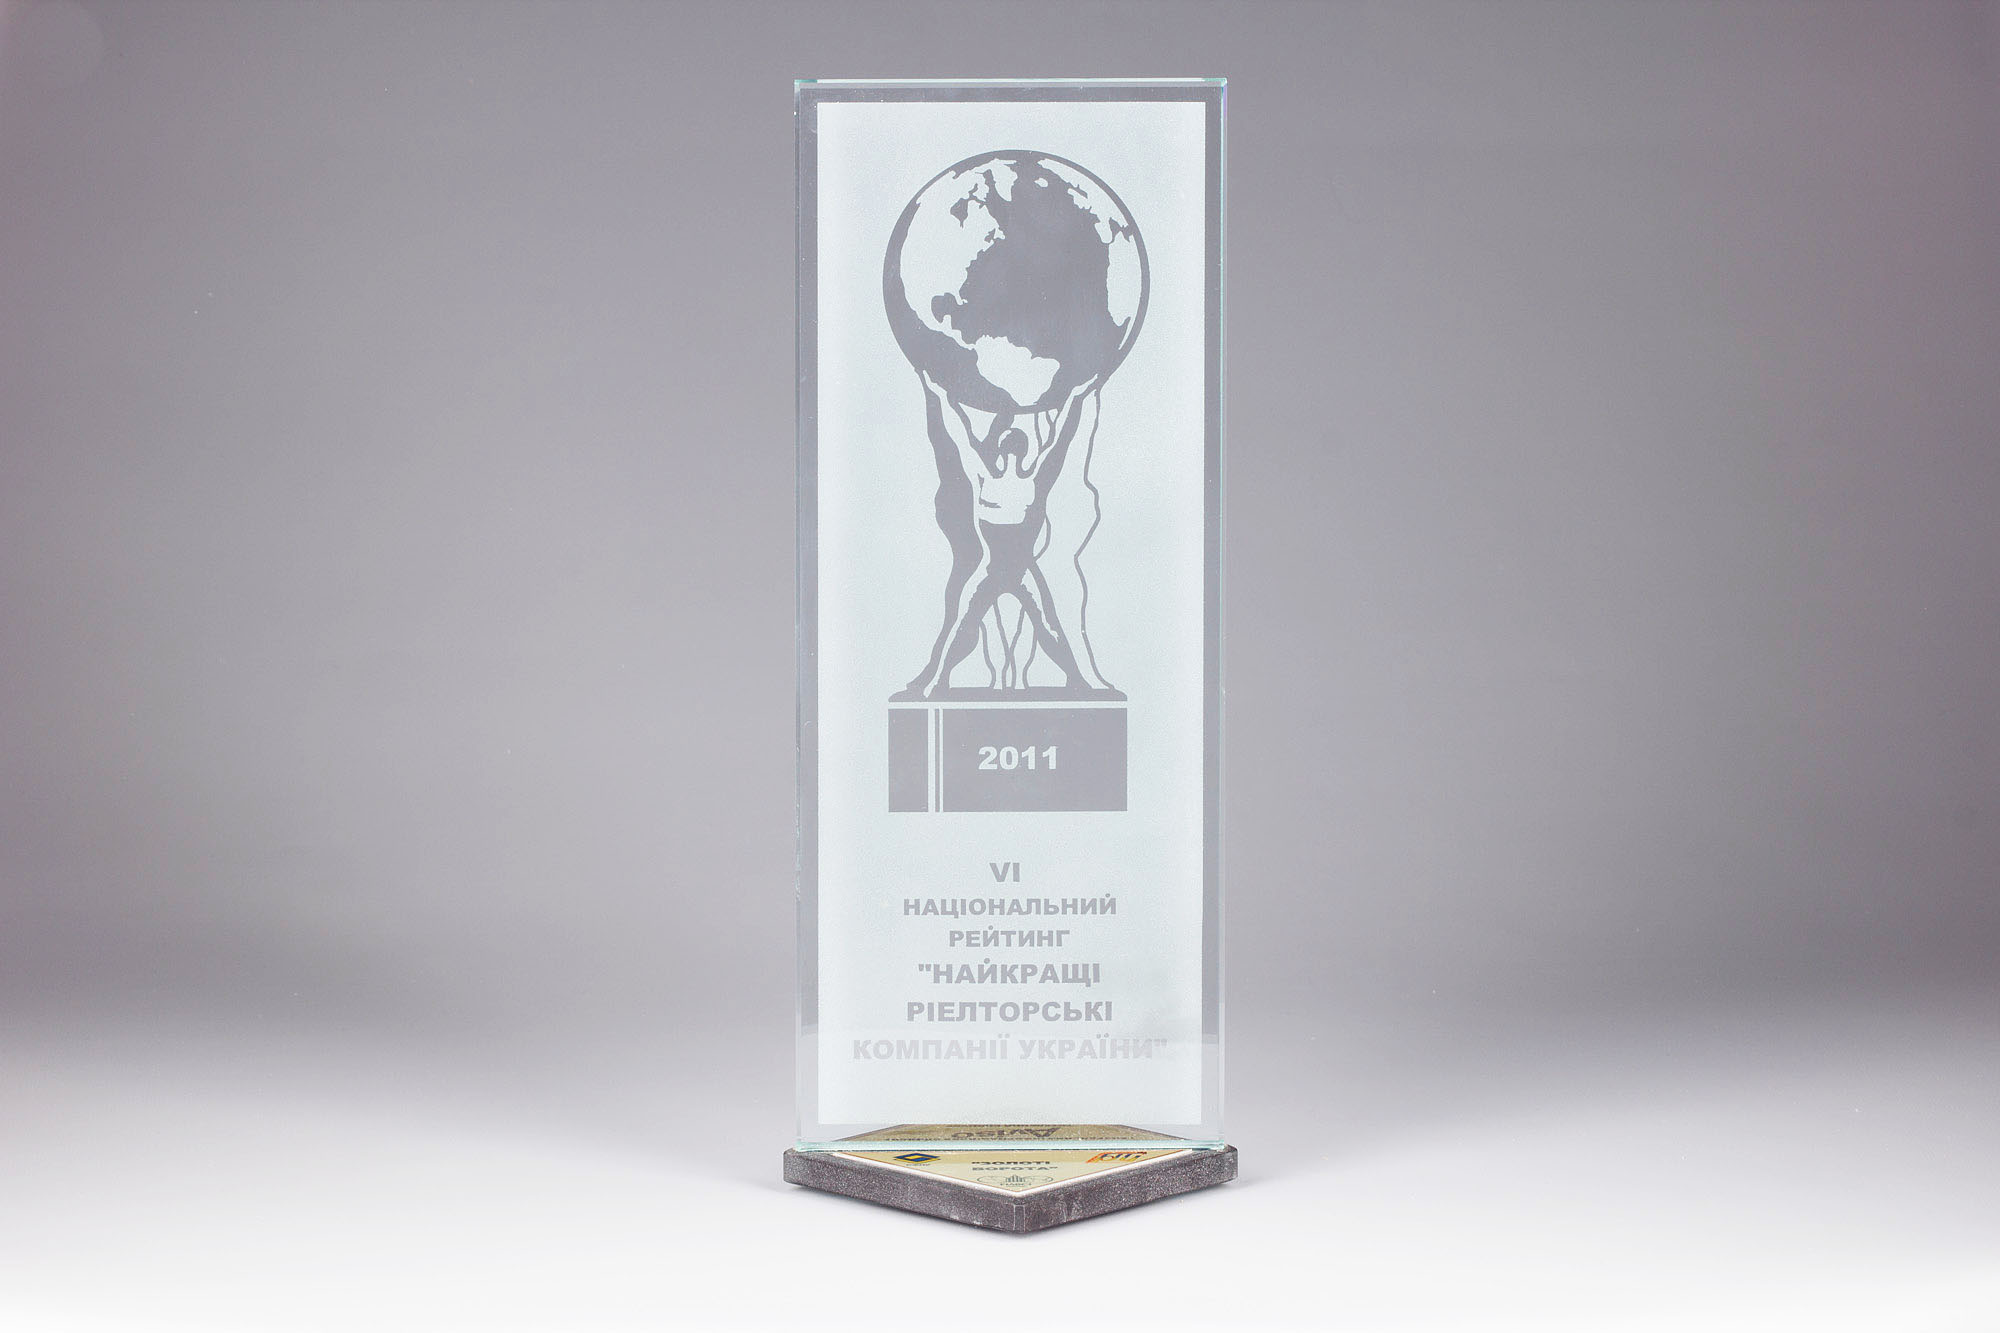 Риелторская Компания «Золотые Ворота» — Победитель VI Национального рейтинга «Лучшие риэлторские компании Украины»